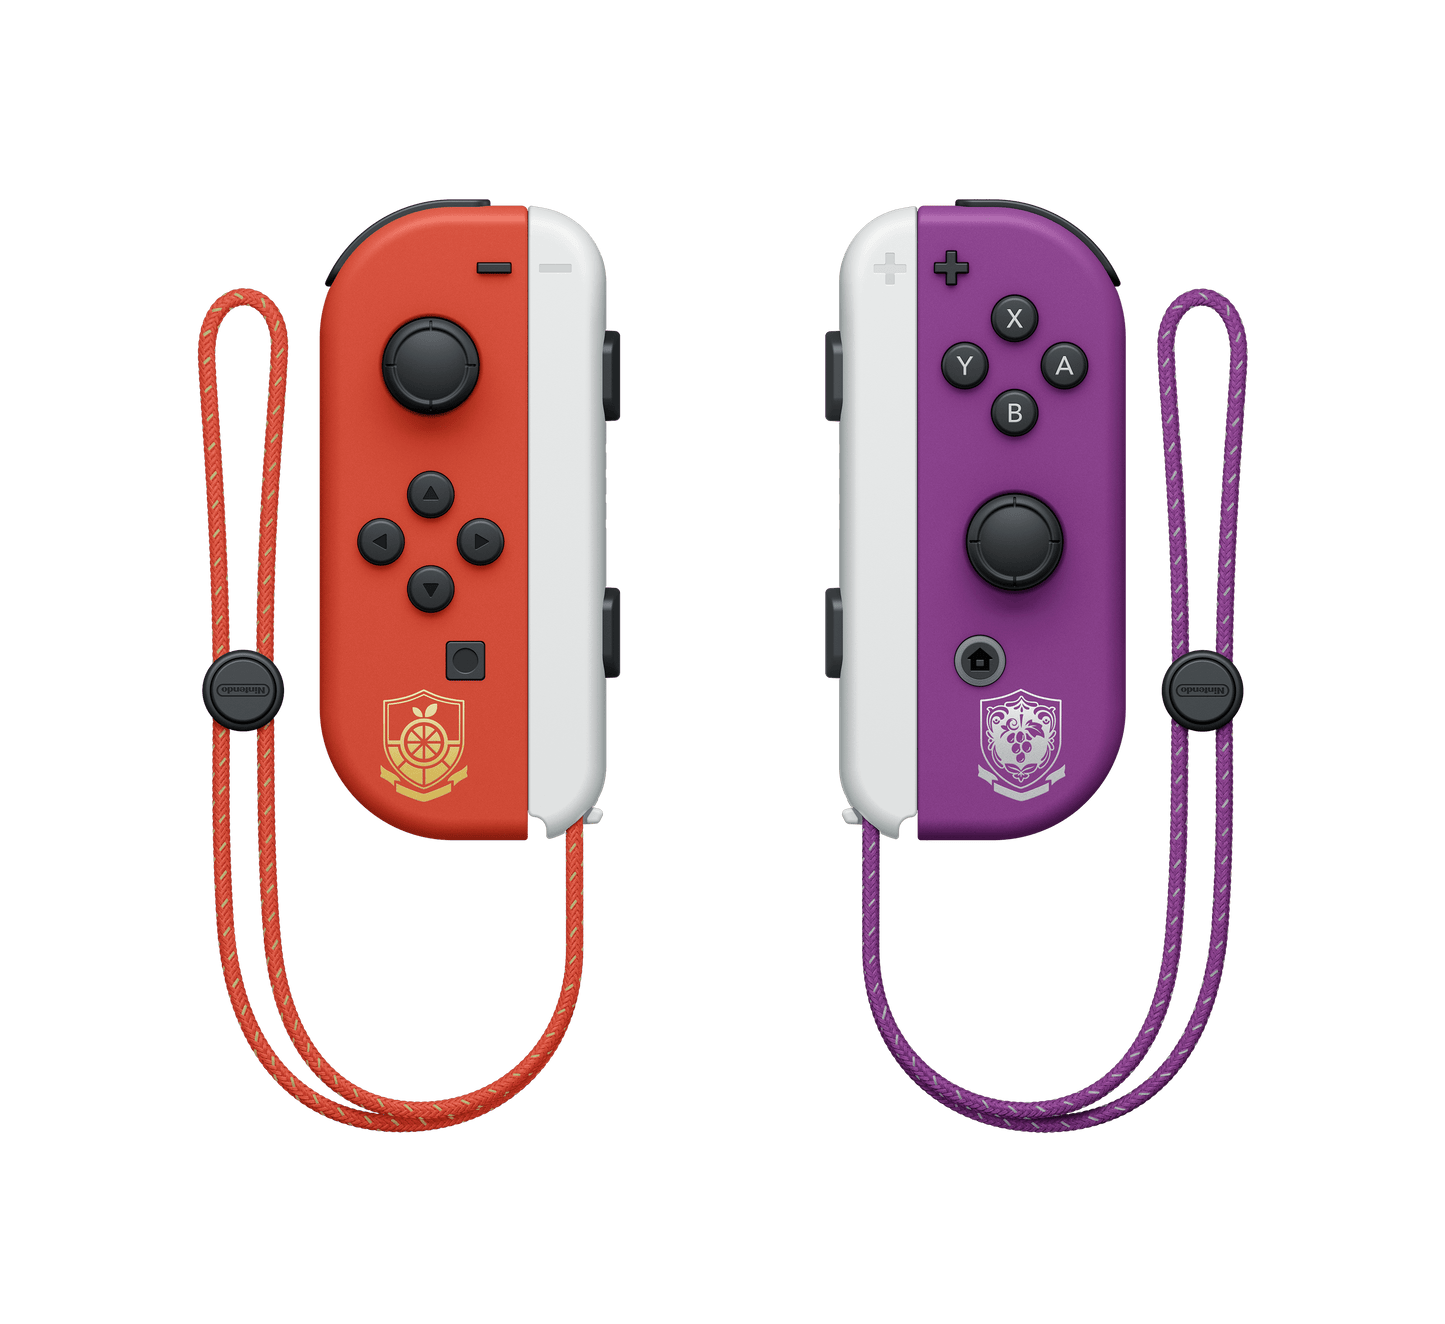 Nintendo Switch OLED | Edition Limité | Pokémon Scarlet & Violet